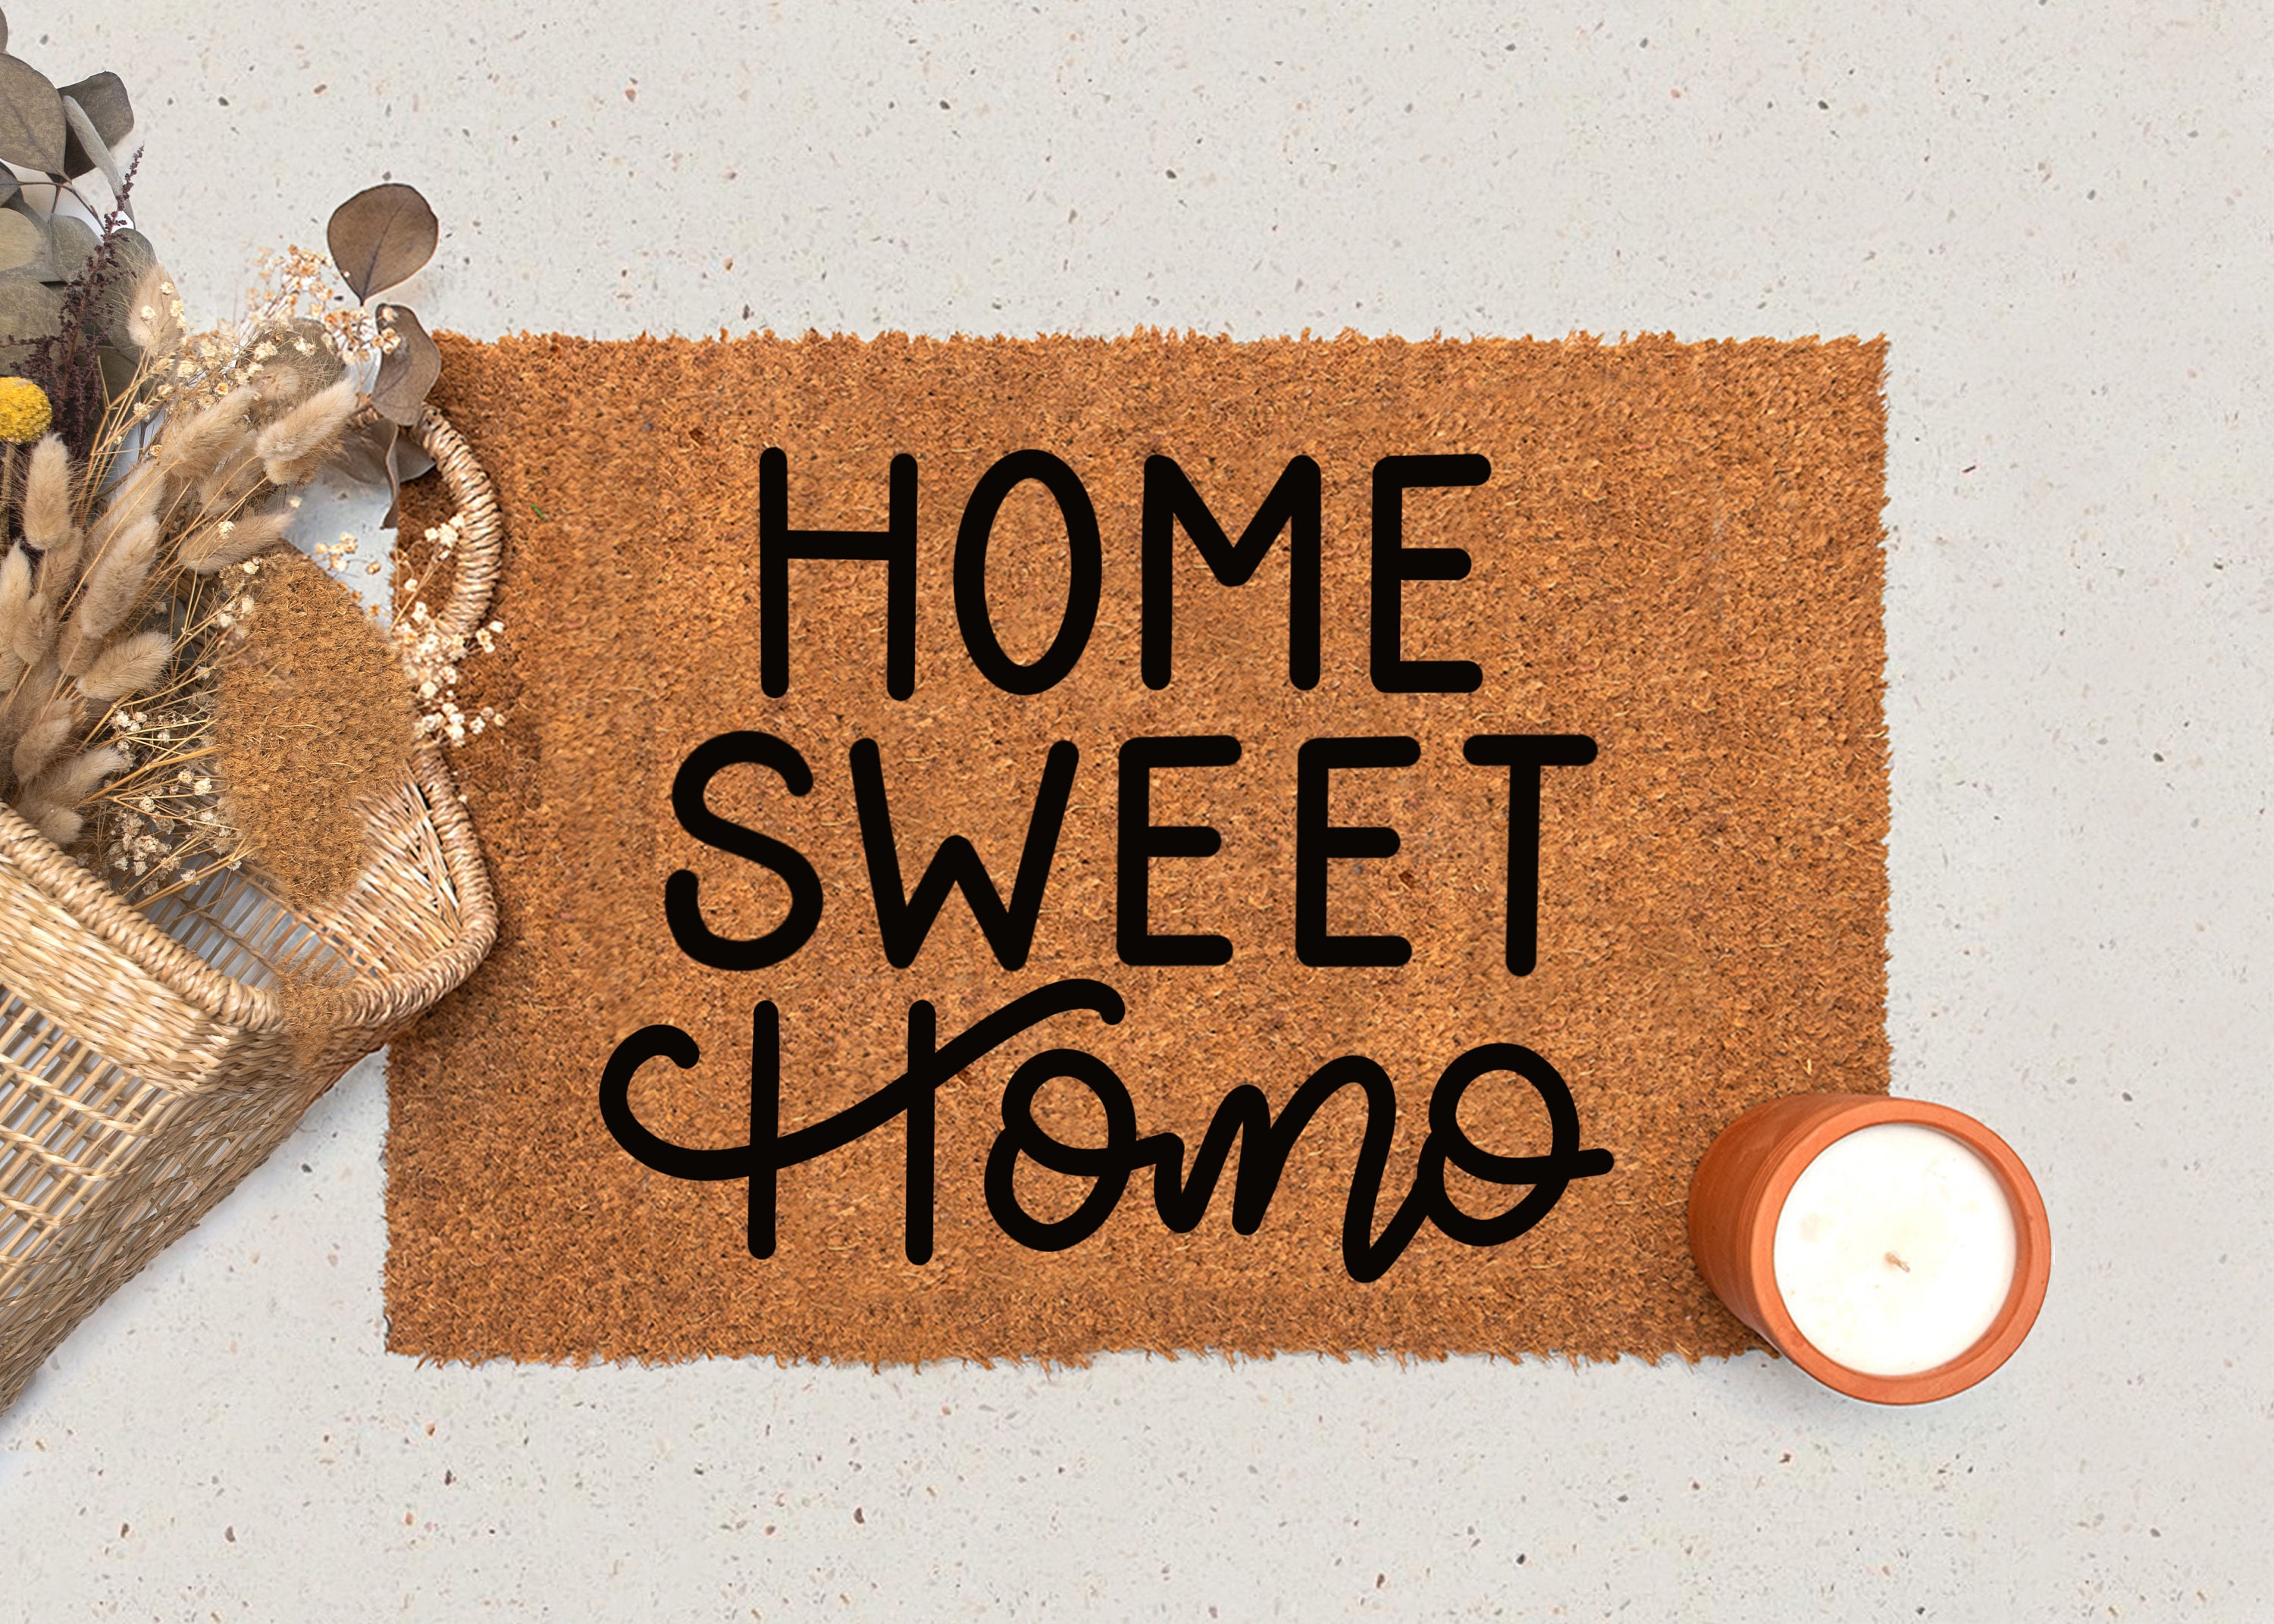 Home Sweet Homo Funny Doormat